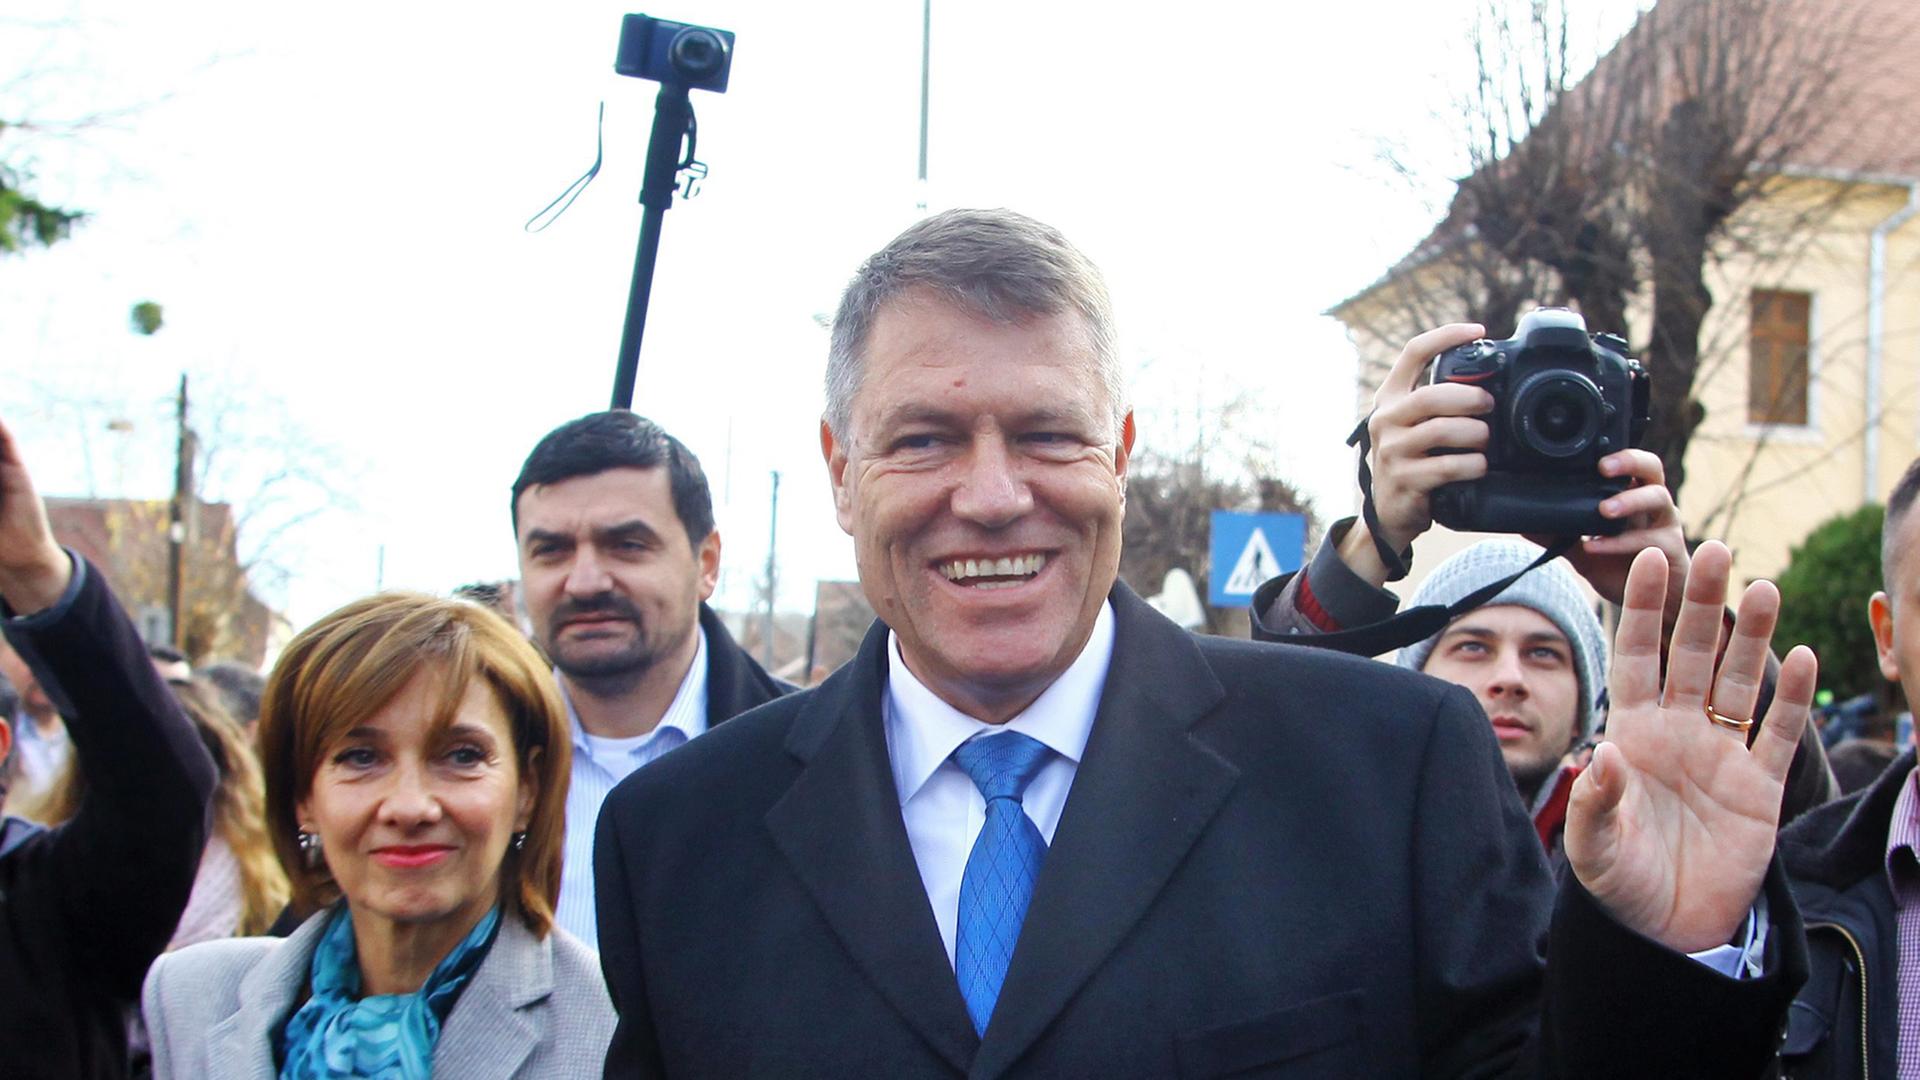 Der siegreiche Präsidentschaftskandidat Klaus Johannis verlässt mit seiner Frau ein Wahllokal und ist dabei umringt von Fotografen.